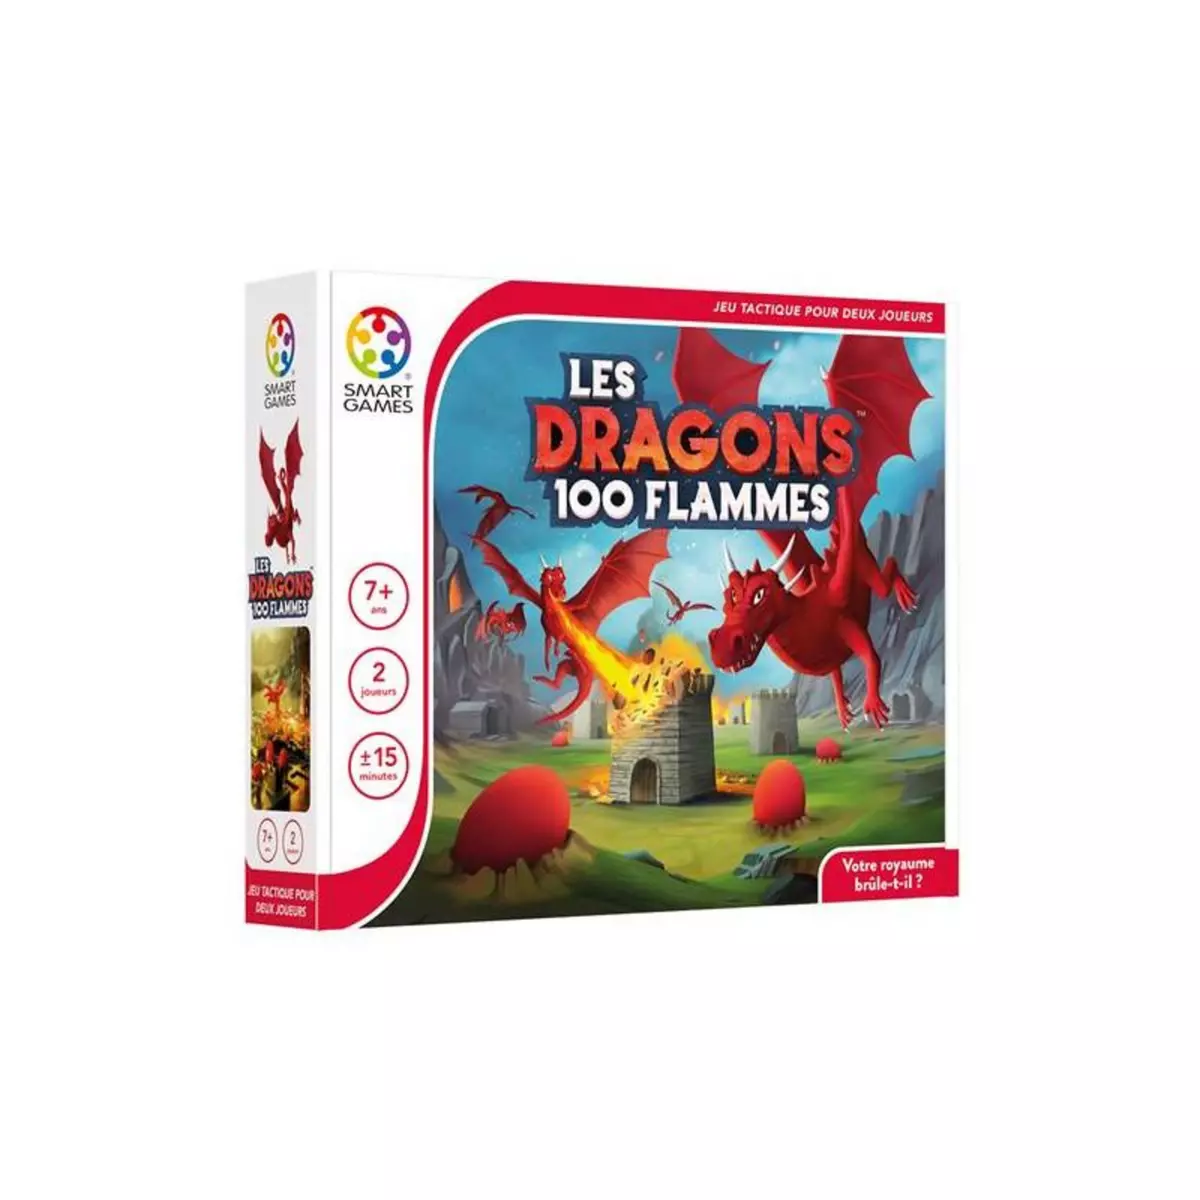 Smart Games Jeu tactique Smartgames Les dragons 100 flammes